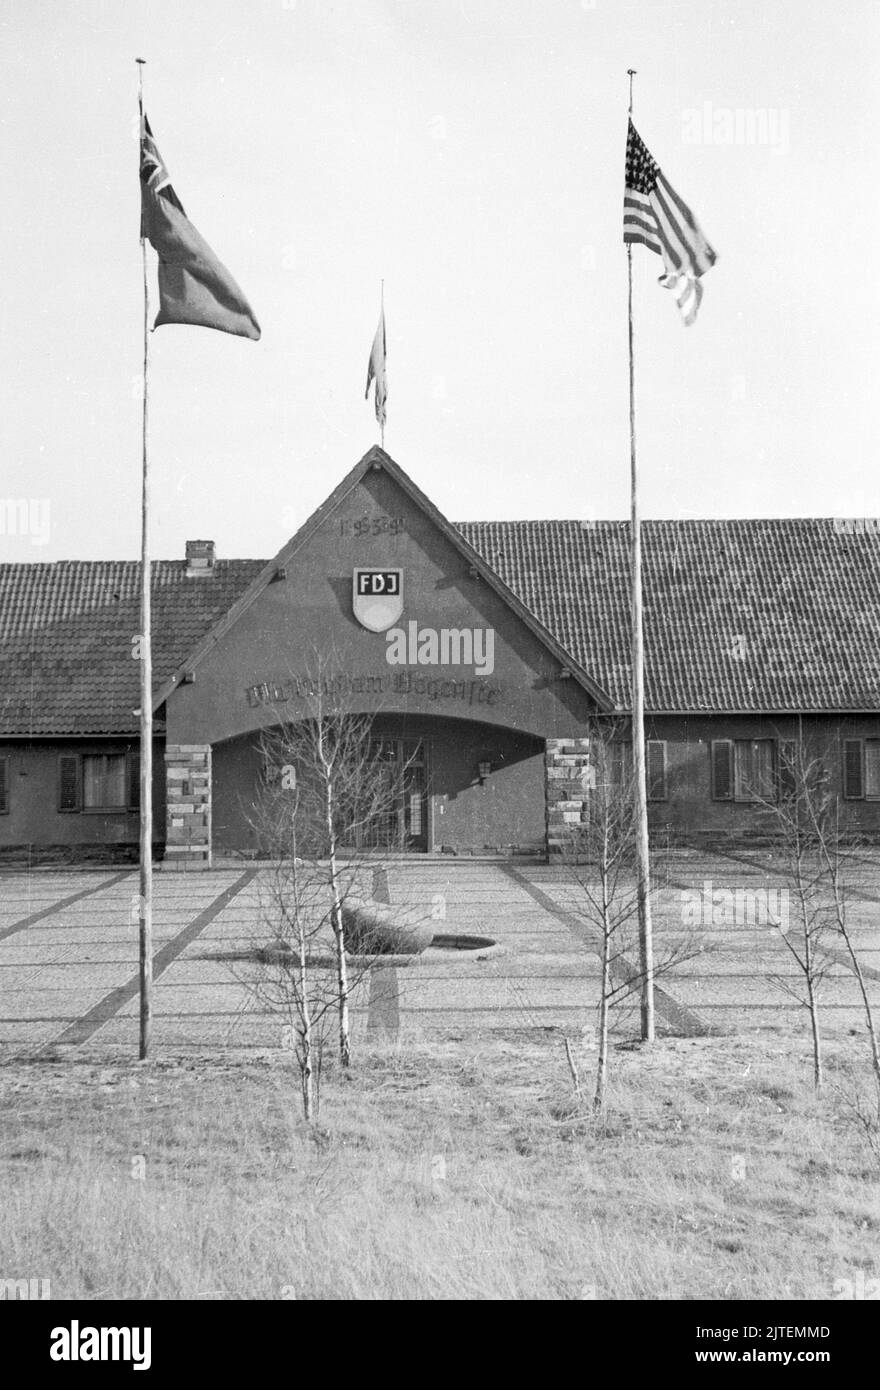 Der Landsitz und die Villa vom früheren Propagandaminister Joseph Goebbels, das Gelände Bogensee bei Wandlitz, wird nun als Hochschule der FDJ genutzt, hier noch  mit alliierten Fahnen, Nähe Berlin, Deutschland 1947. Stock Photo